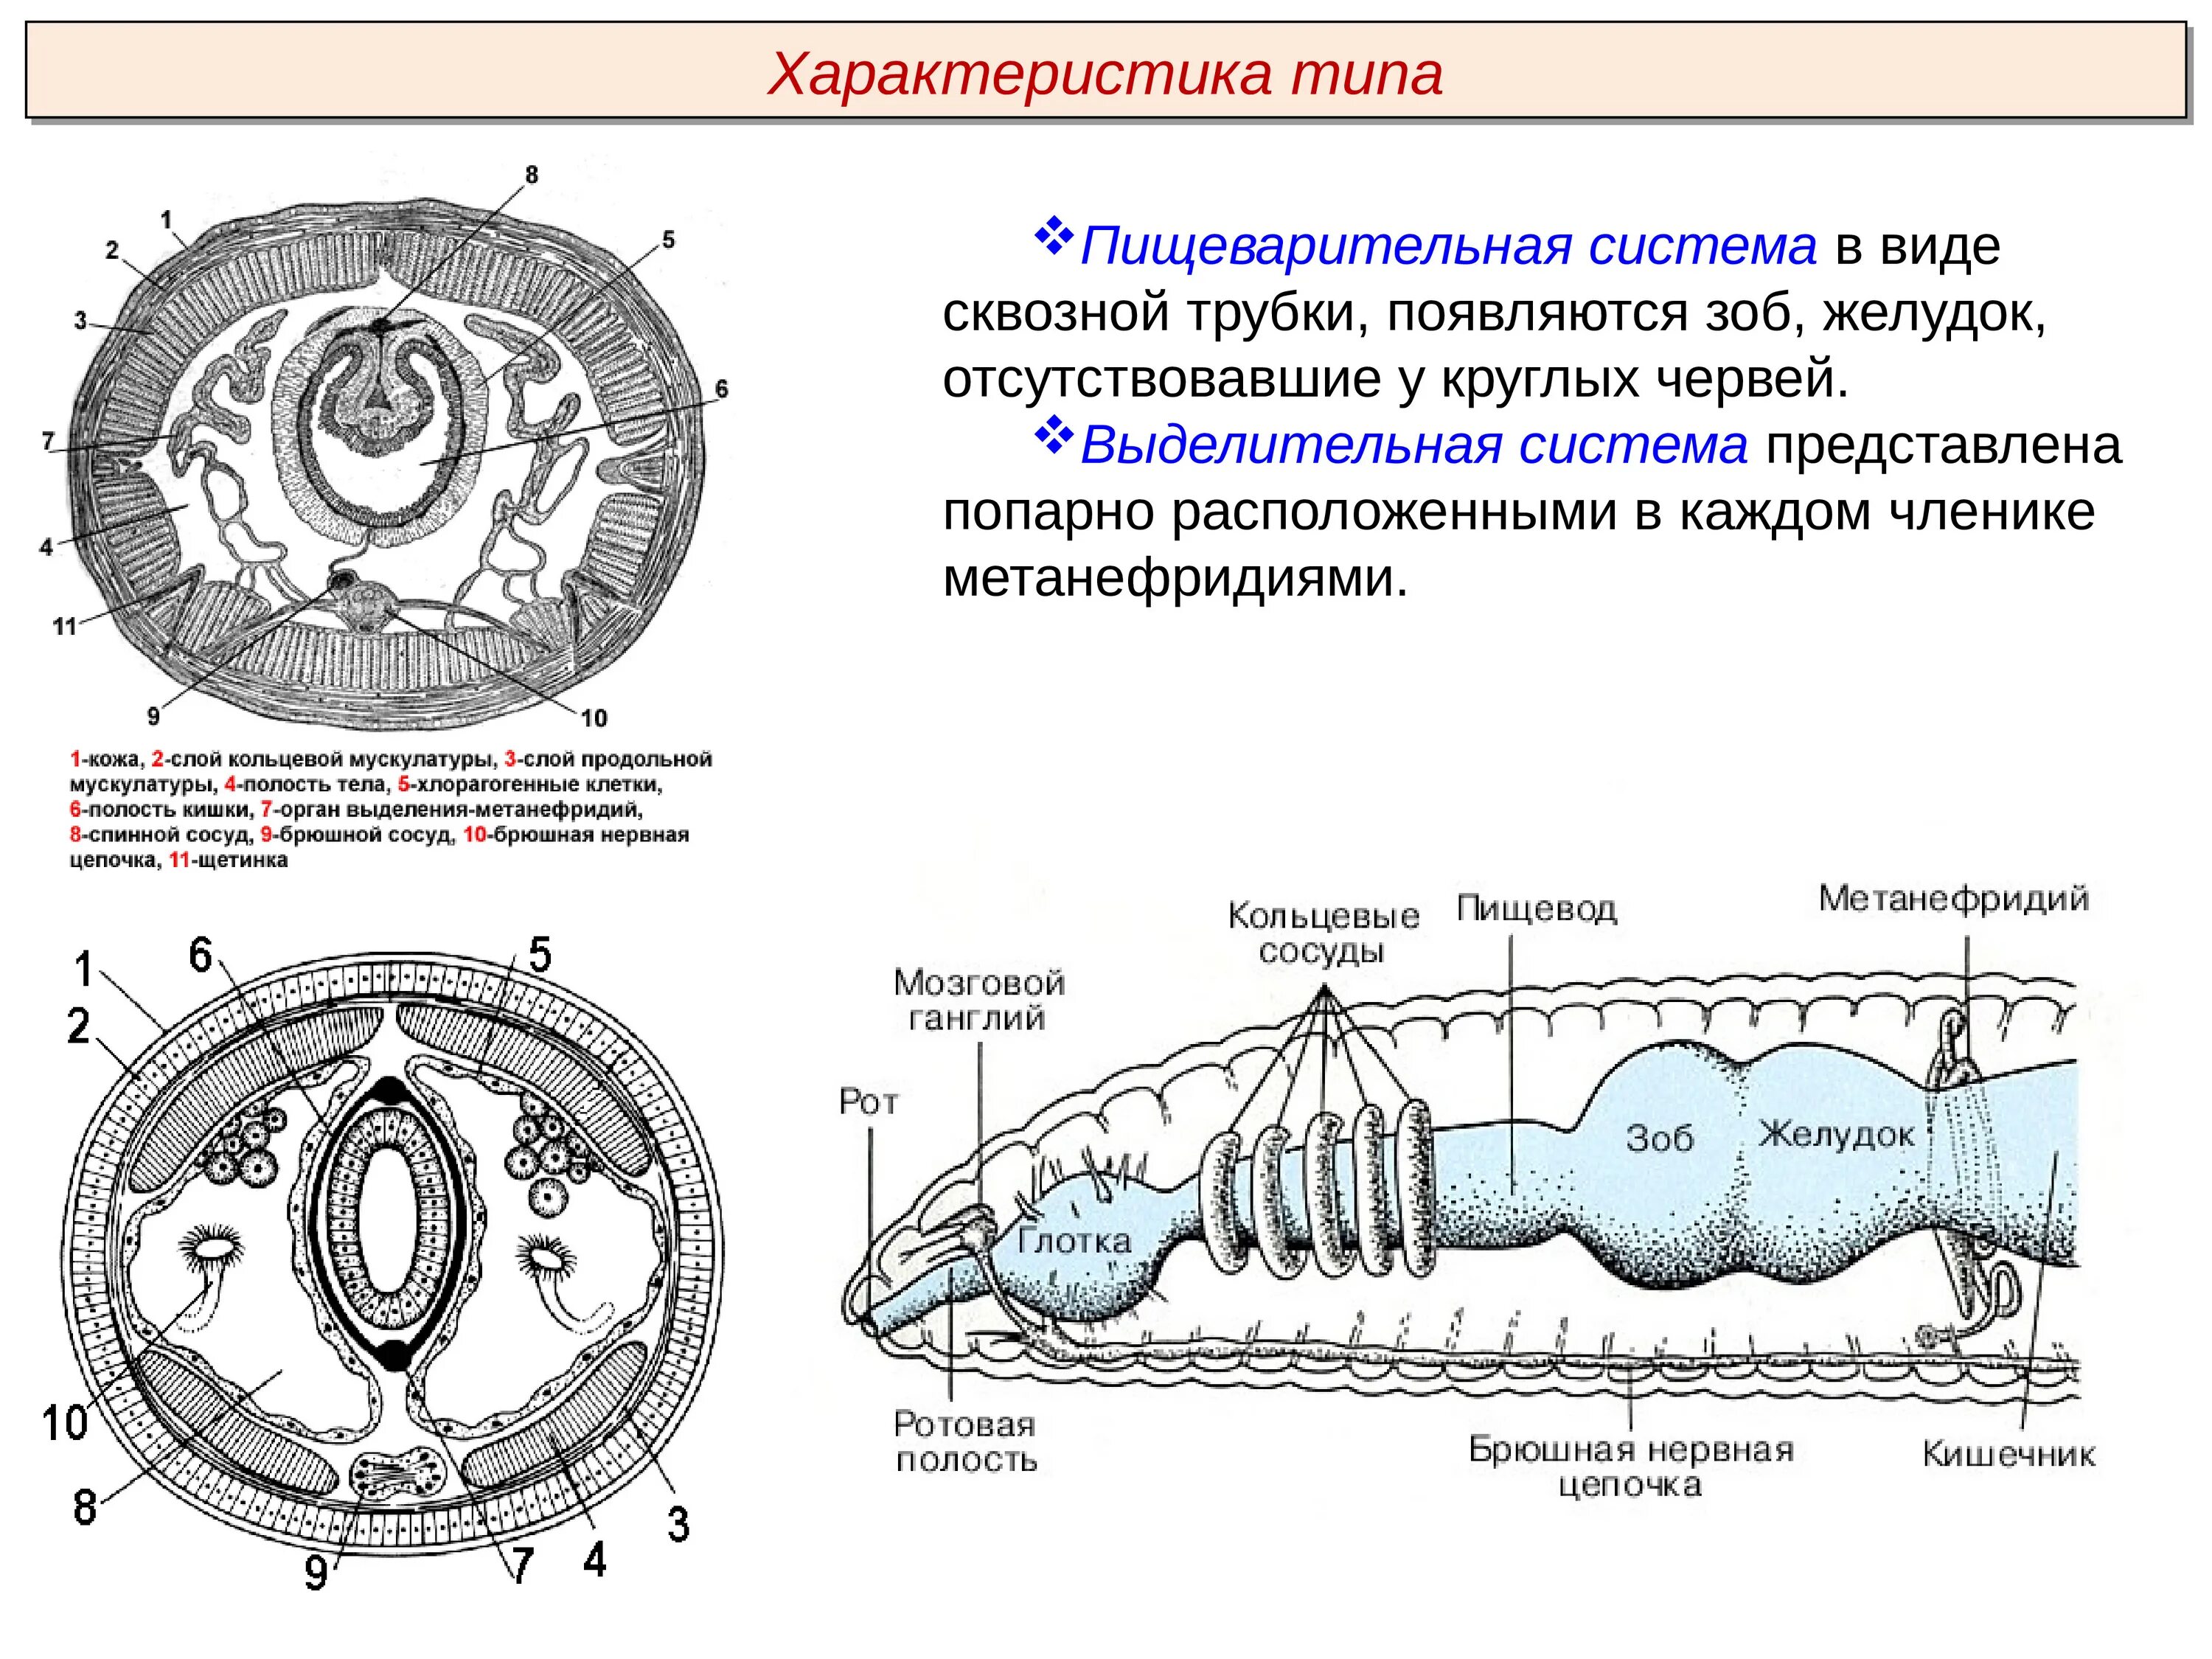 Сквозной кишечник у червей. Тип кольчатые черви строение выделительной системы. Тип выделительной системы кольчатых червей. Органы выделительной системы кольчатых червей. Выделительная система кольчатых червей.